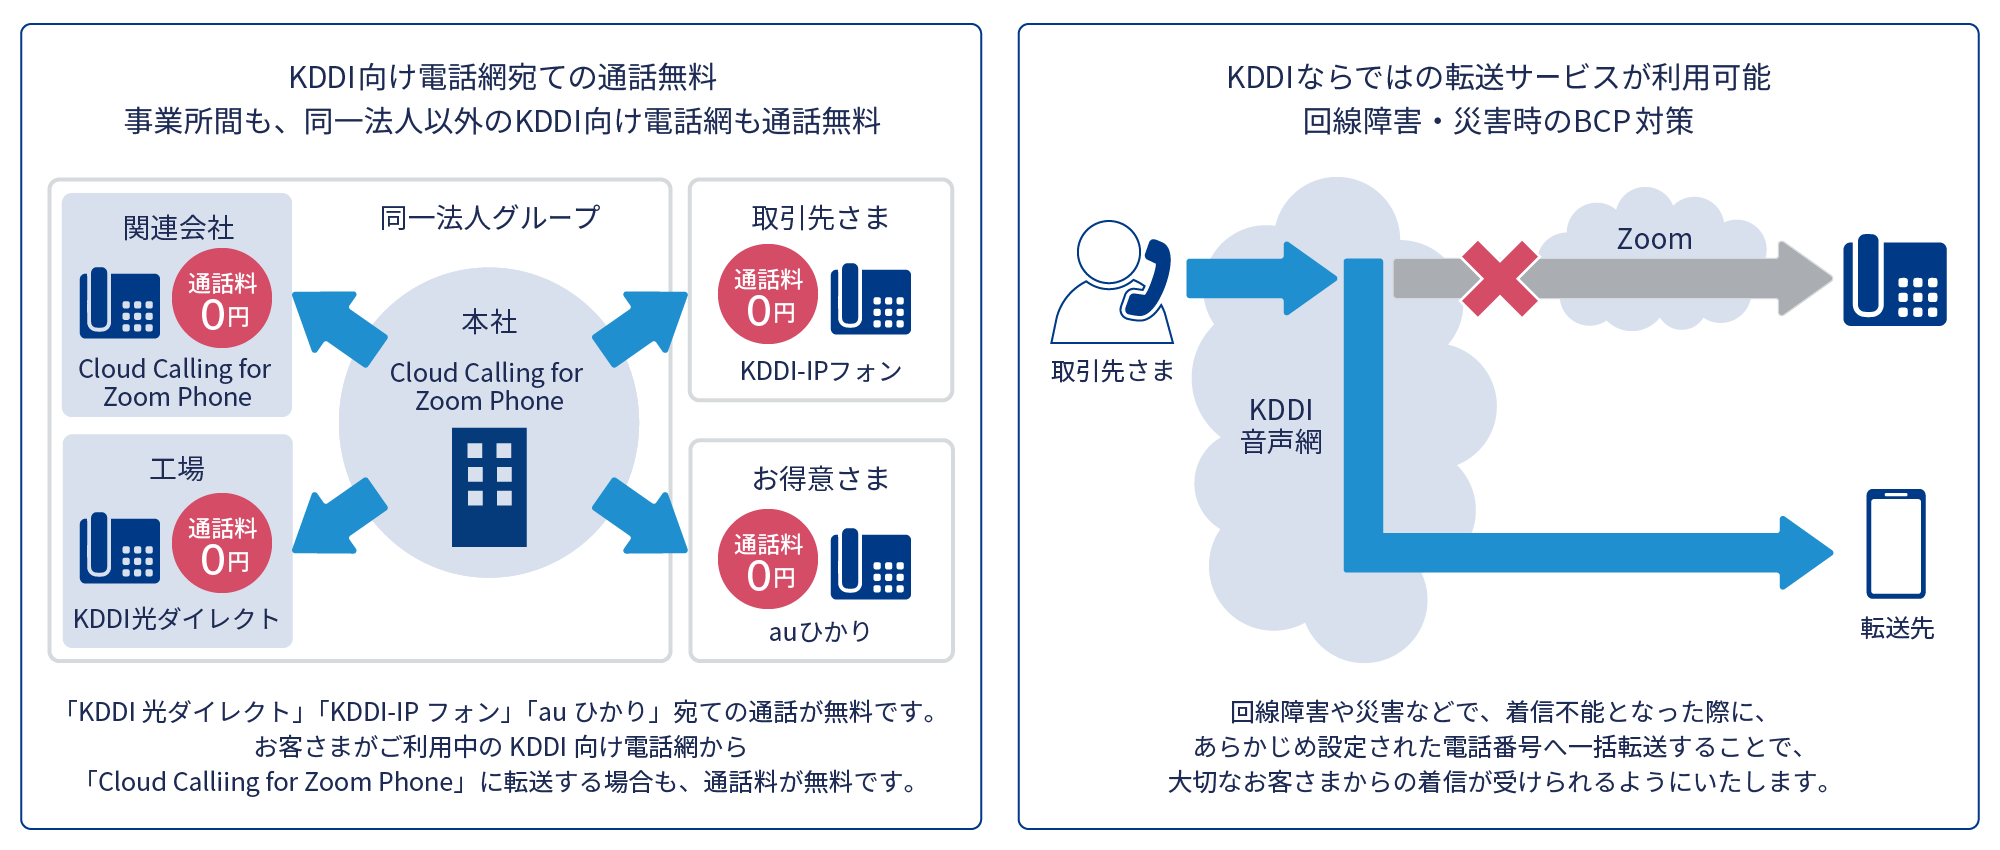 KDDI向け電話網宛ての通話無料、事業所間も、 同一法人以外のKDDI向け電話網も通話無料「KDDI 光ダイレクト」 「KDDI-IPフォン」 「auひかり」 宛ての通話が無料です。お客さまがご利用中のKDDI向け電話網から「Cloud Calliing for Zoom Phone」 に転送する場合も、 通話料が無料です。 KDDIならではの転送サービスが利用可能、回線障害 災害時のBCP対策、回線障害や災害などで、 着信不能となった際に、あらかじめ設定された電話番号へ一括転送することで、大切なお客さまからの着信が受けられるようにいたします。